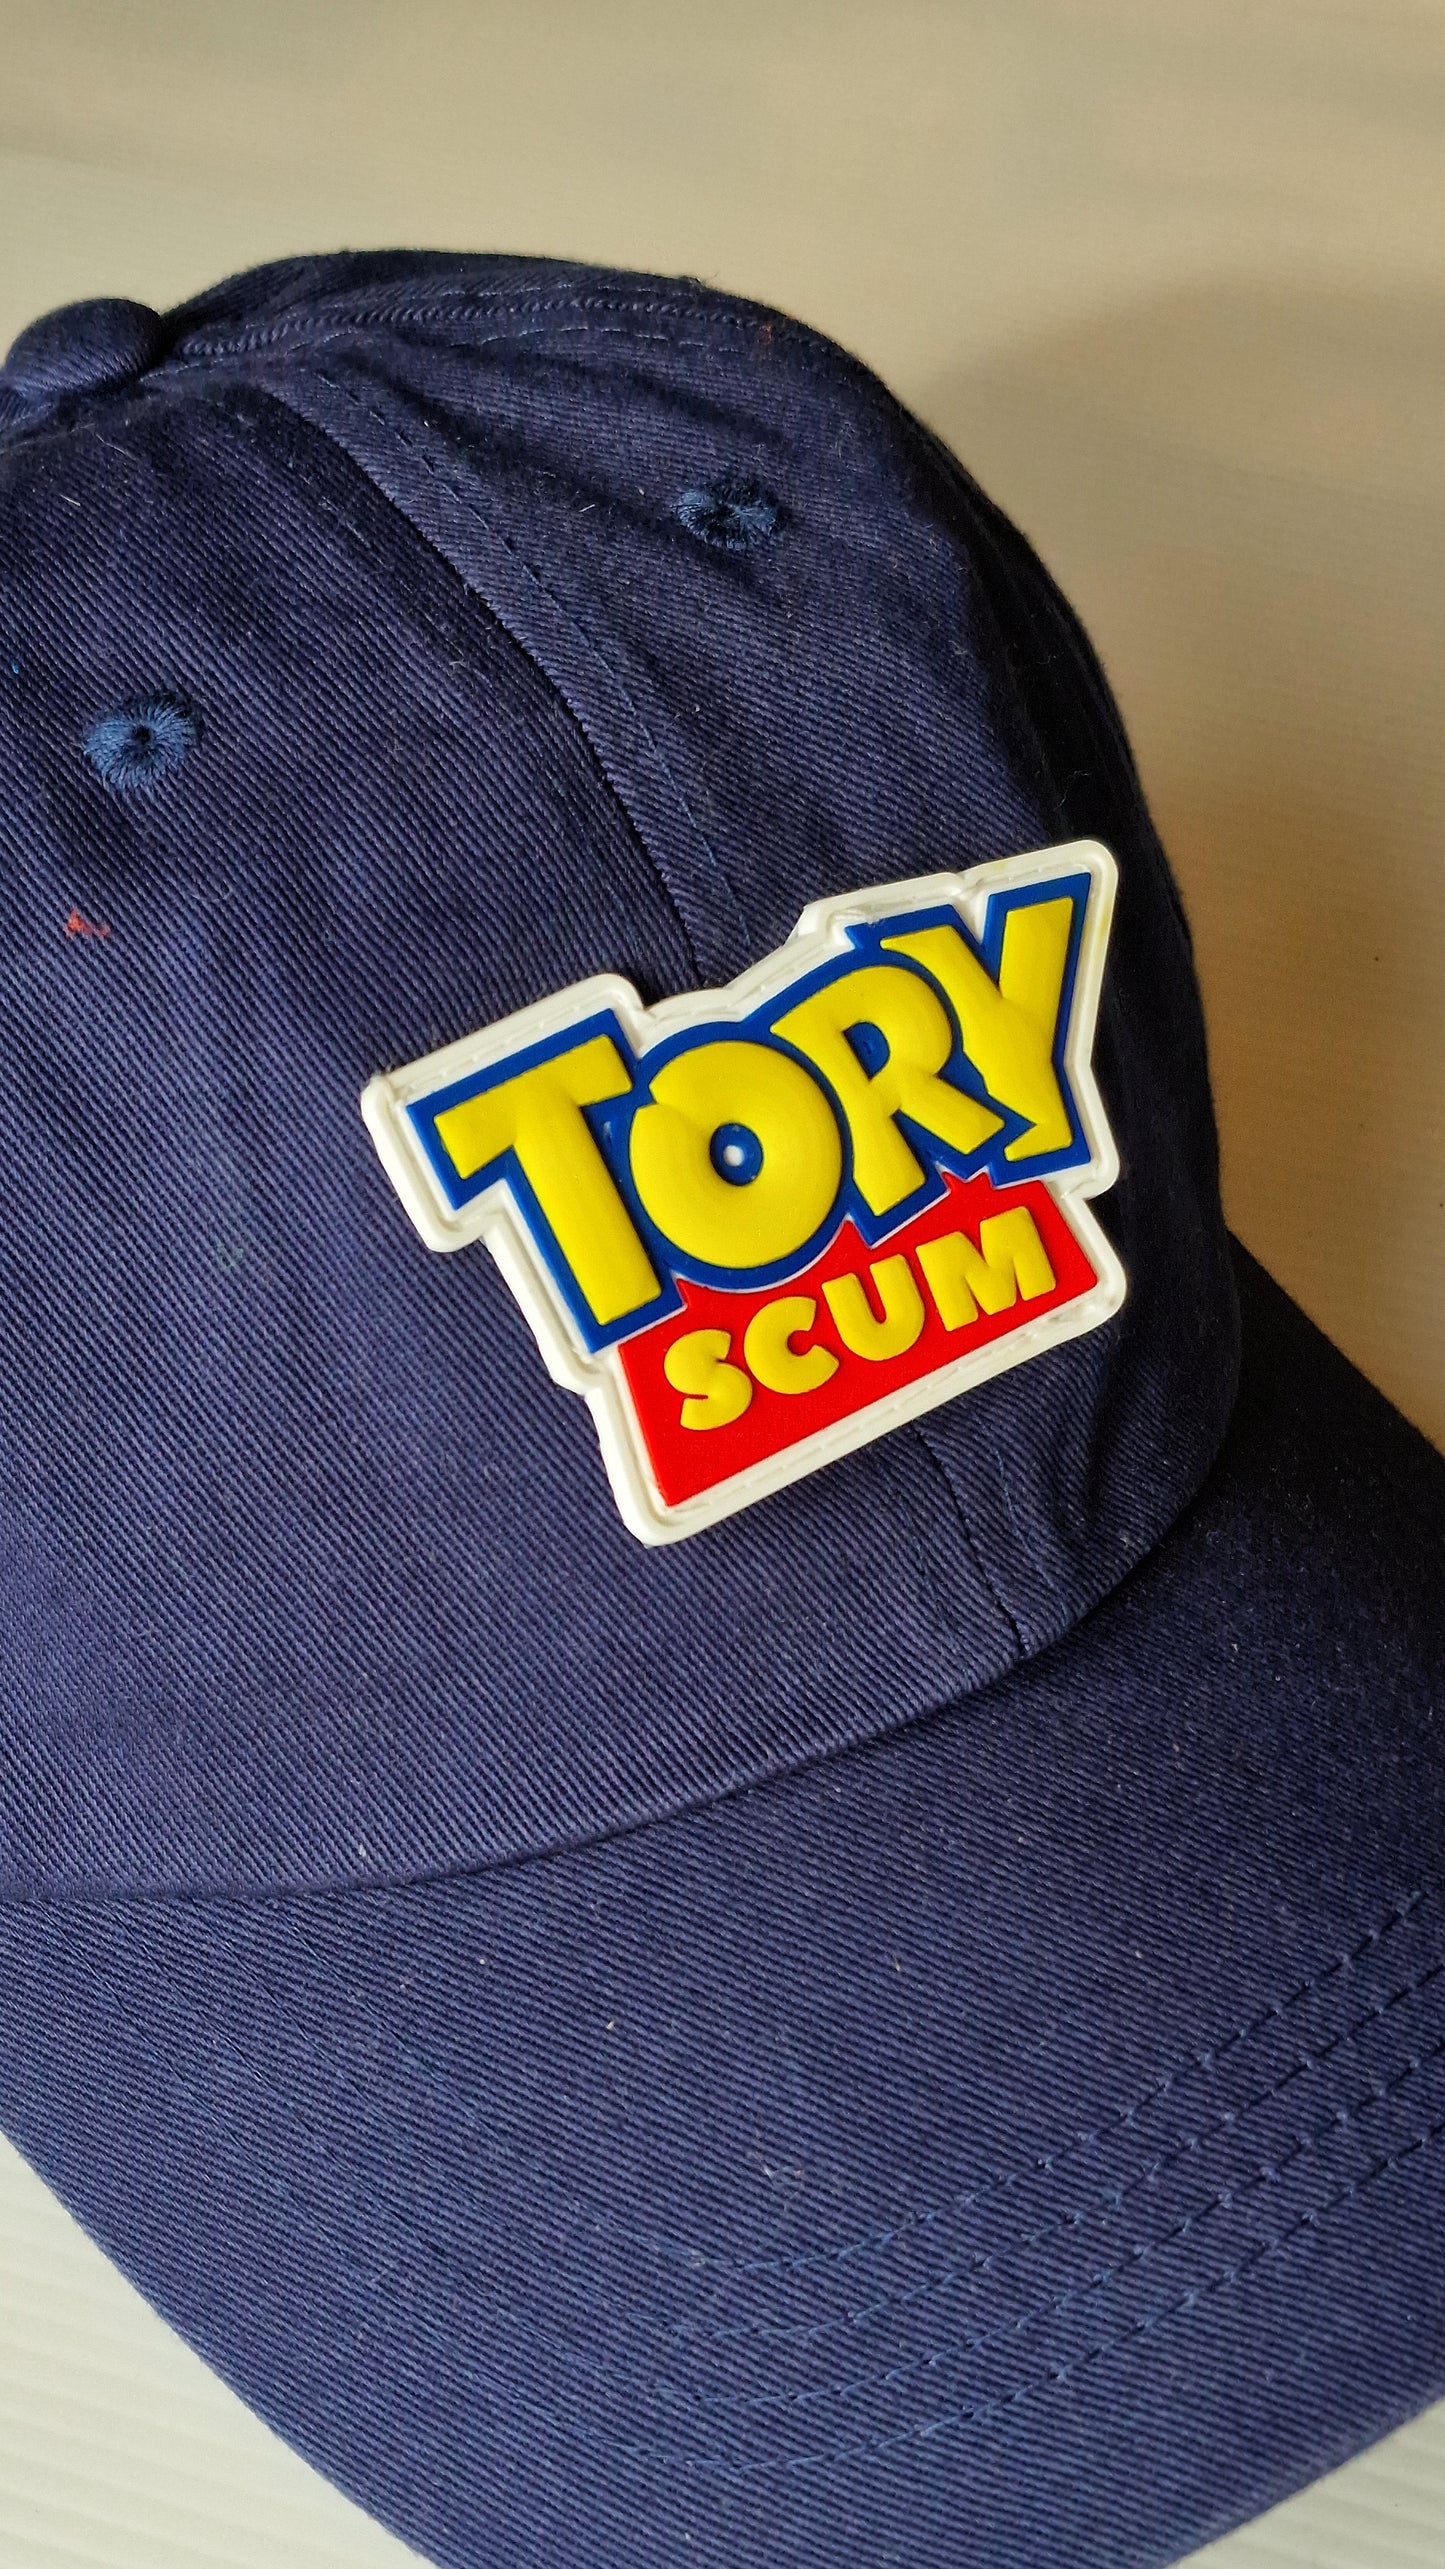 Tory Scum PVC Patch Low Profile Dad Cap Blue